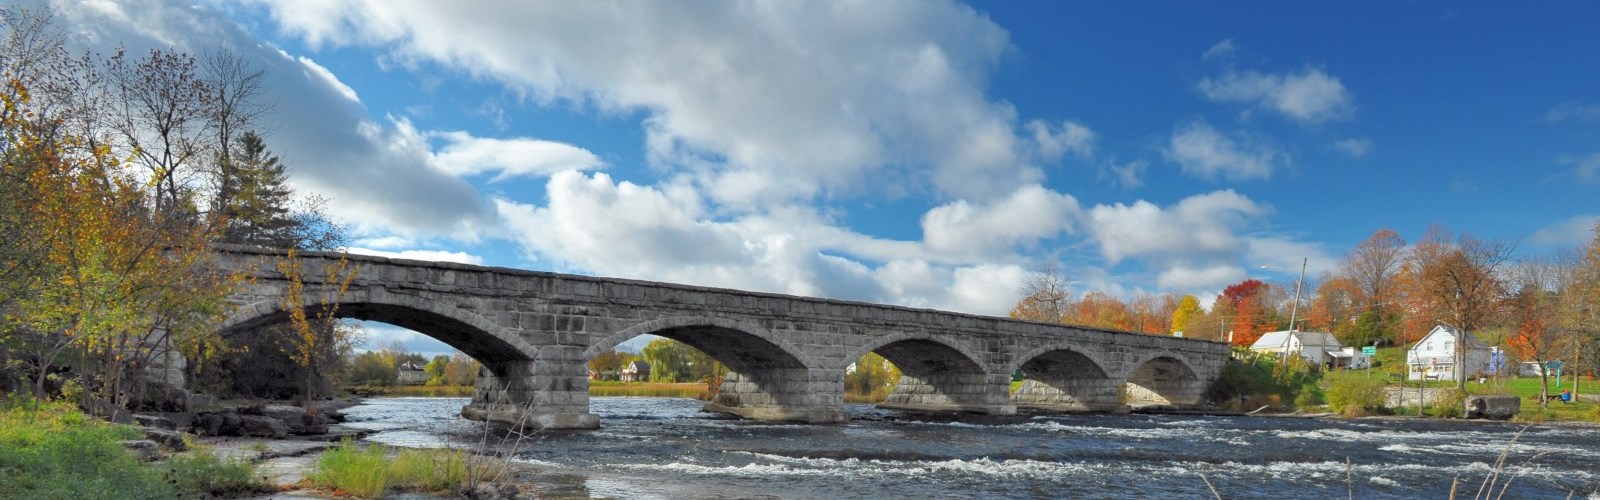 Five Span Bridge in the fall